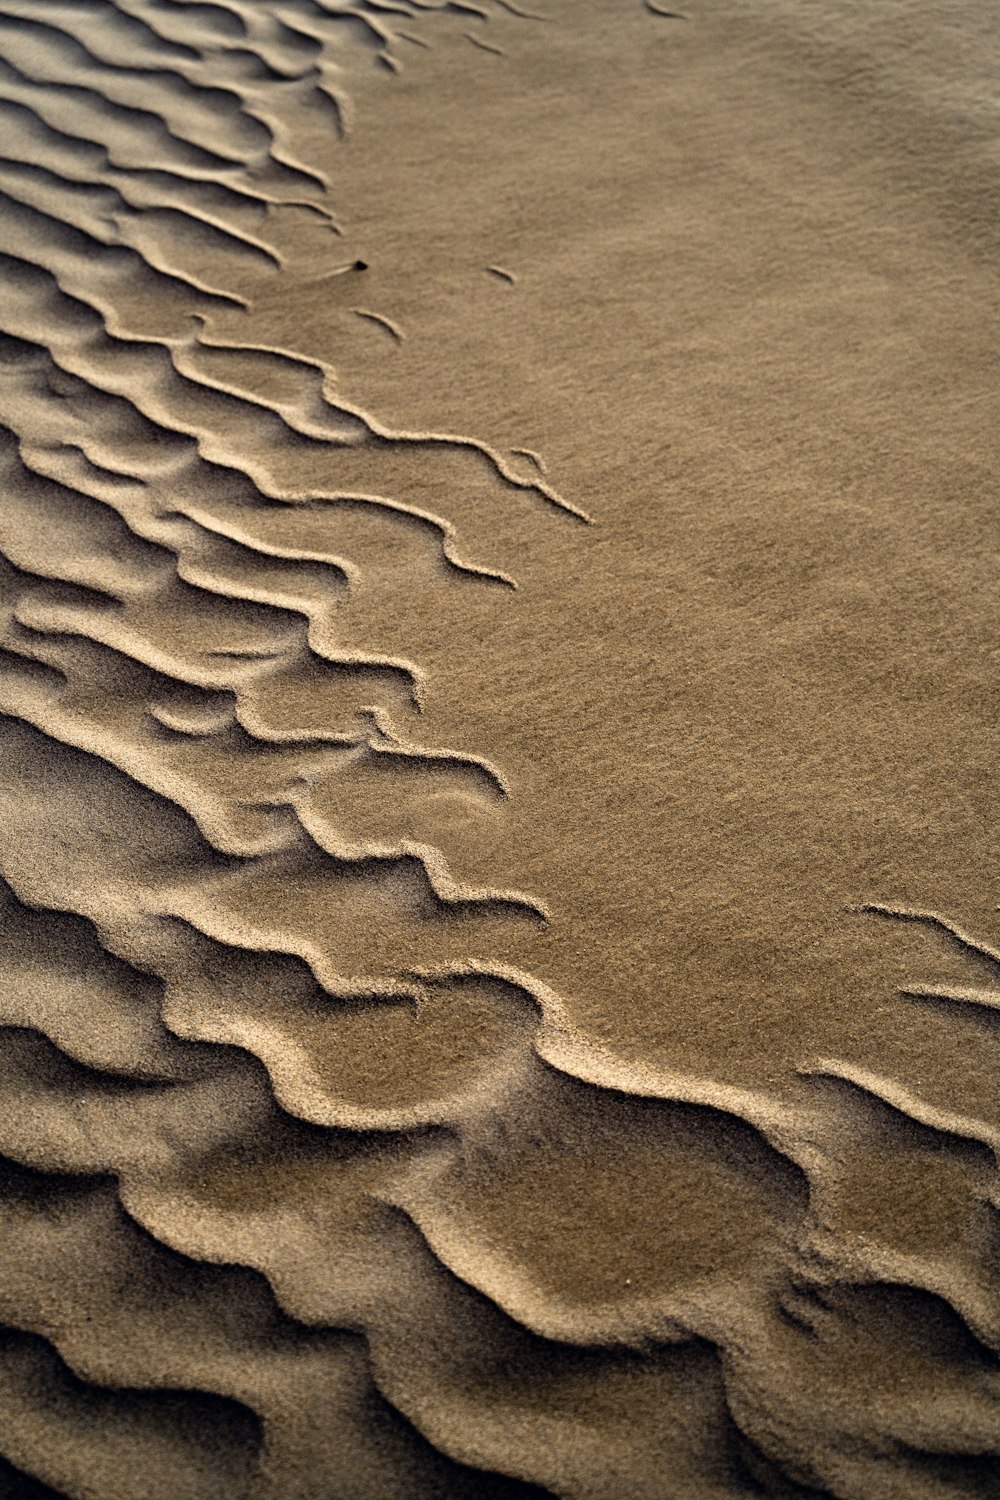 eine sandige Fläche mit Wellenlinien im Sand